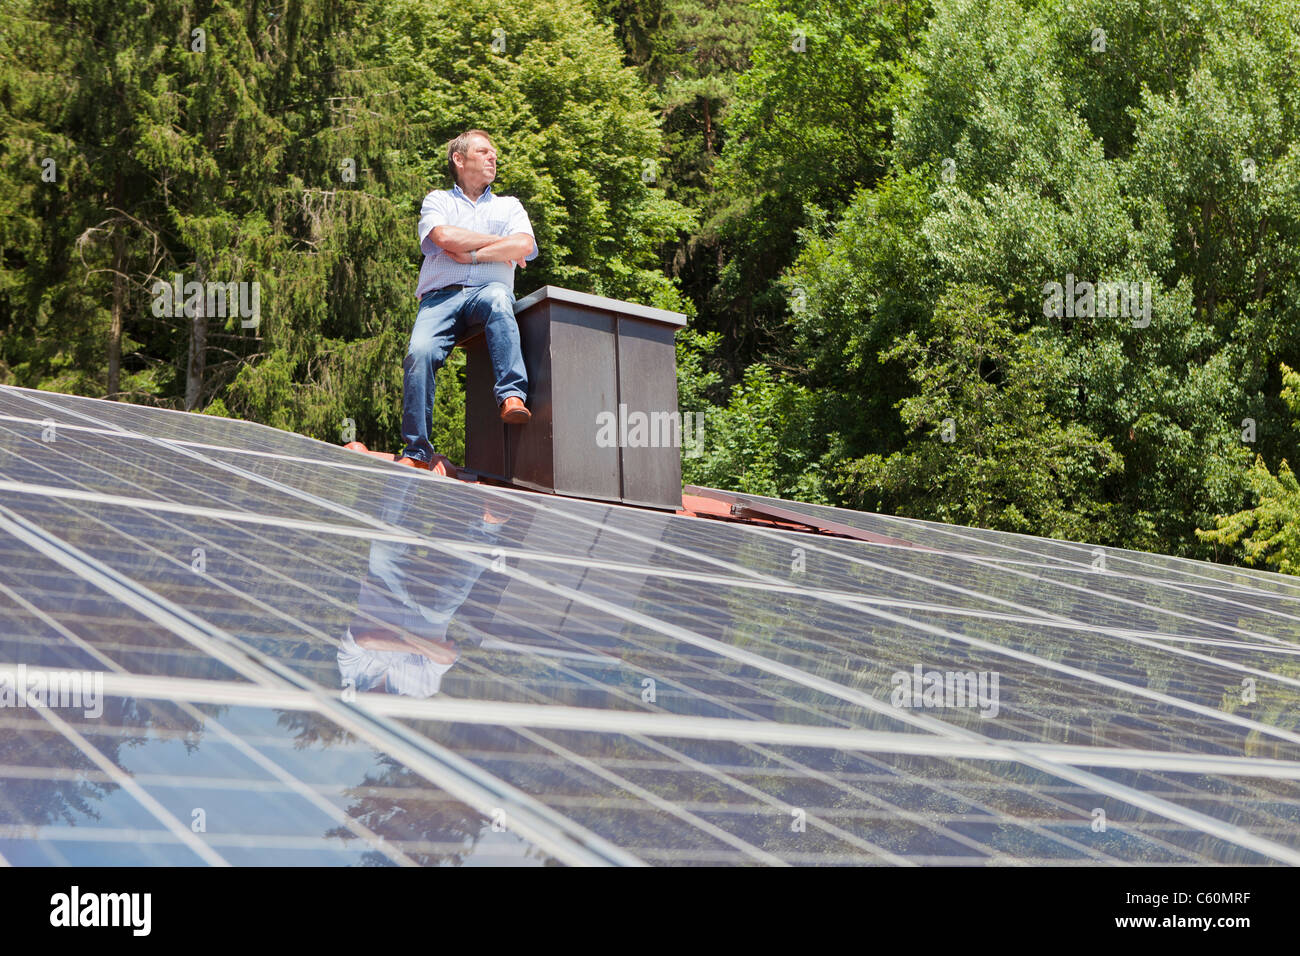 Mann auf getäfelten Solardach Stockfoto